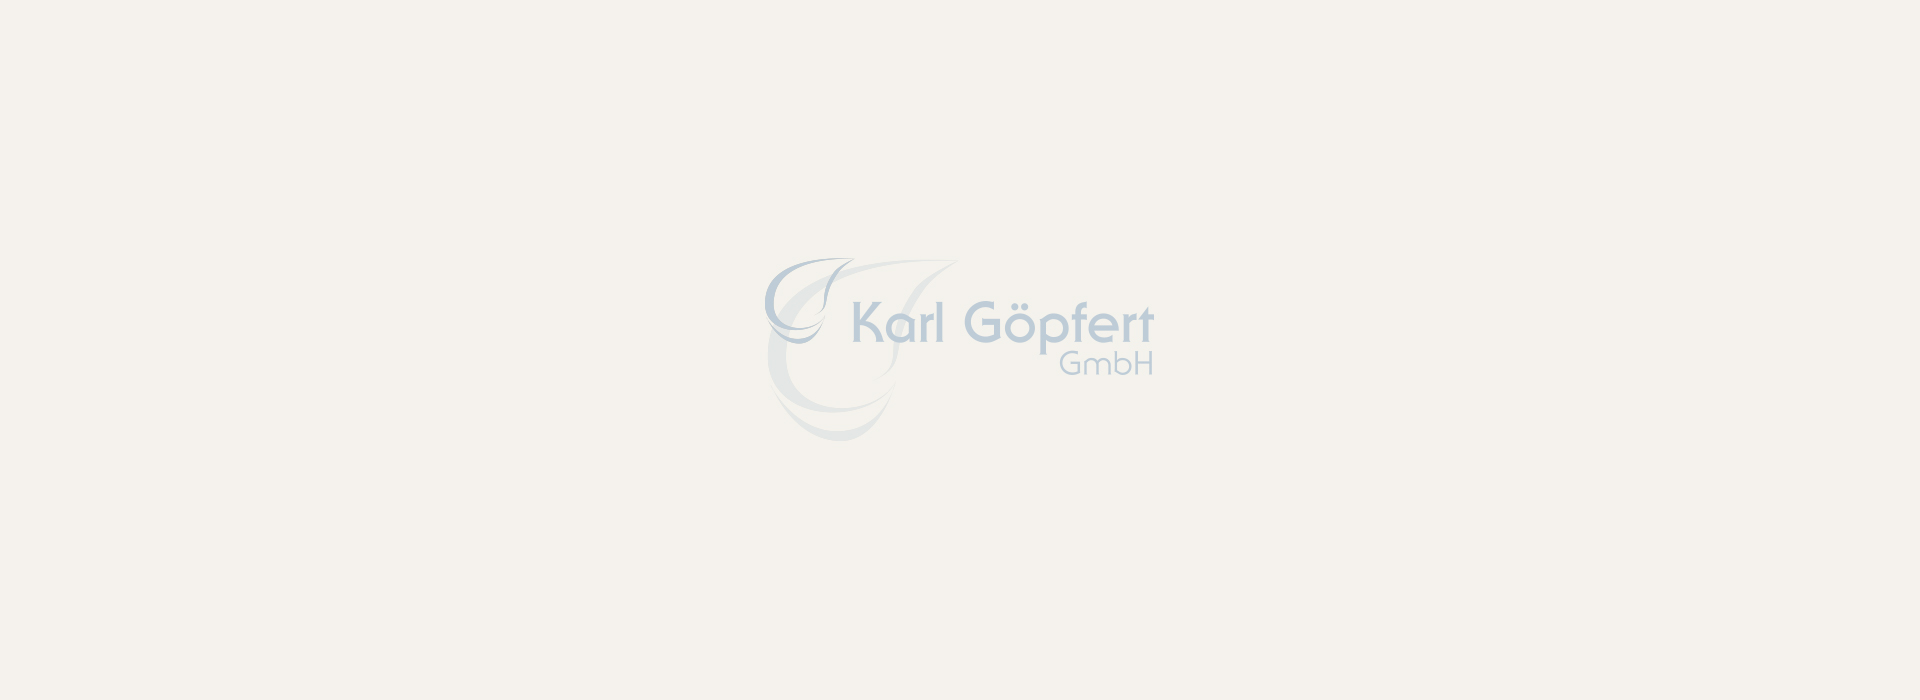 karl-goepfert-platzhalterbild-header